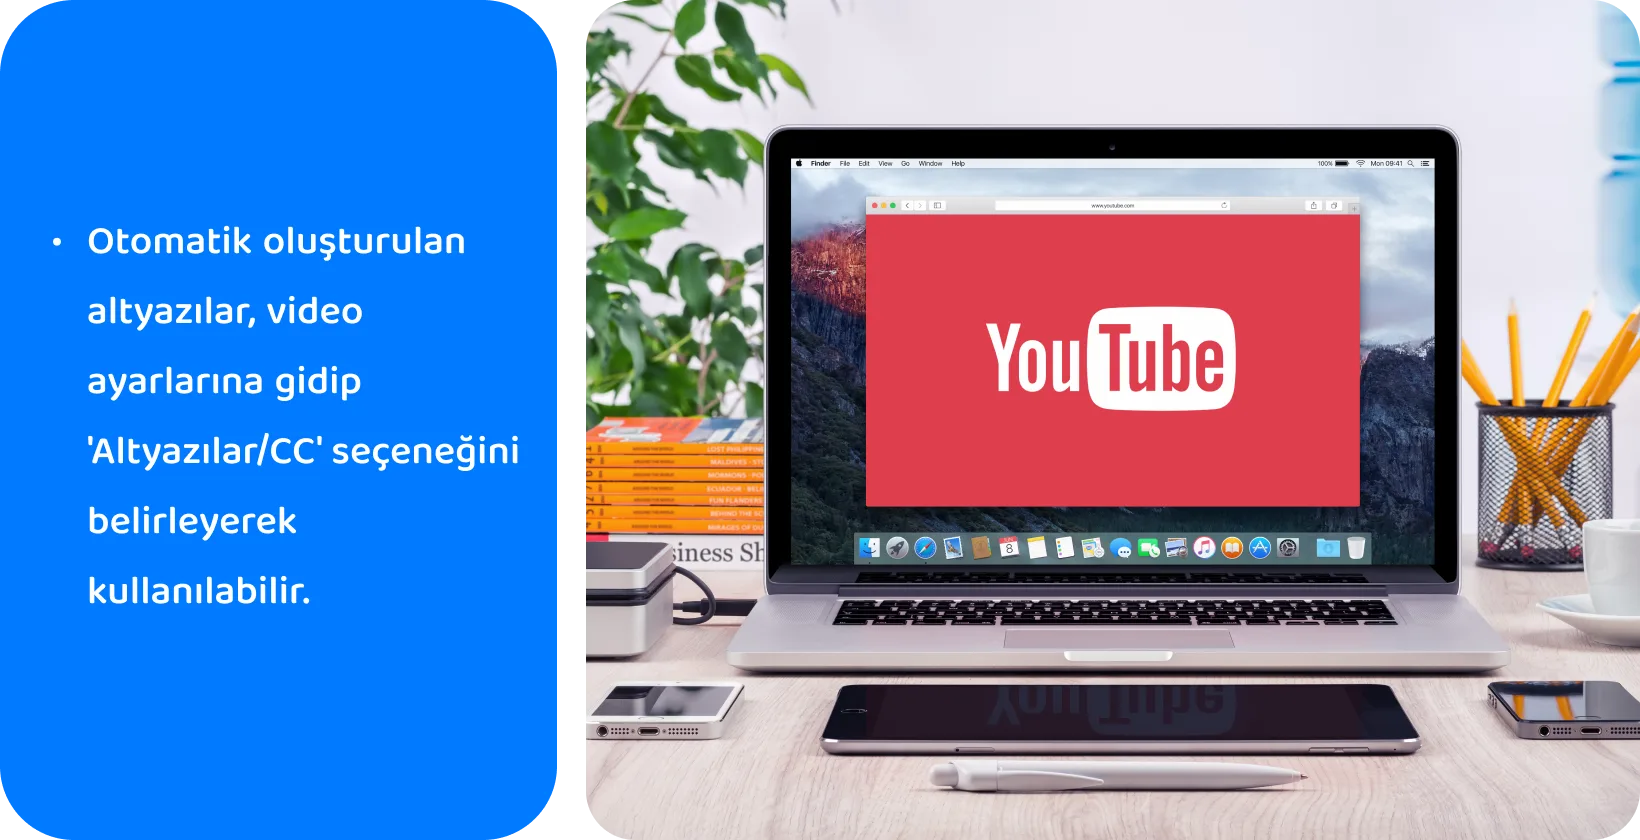 YouTube bir dizüstü bilgisayar ekranında, video erişilebilirliği ve SEO için otomatik olarak oluşturulan altyazıların kullanımını teşvik eder.